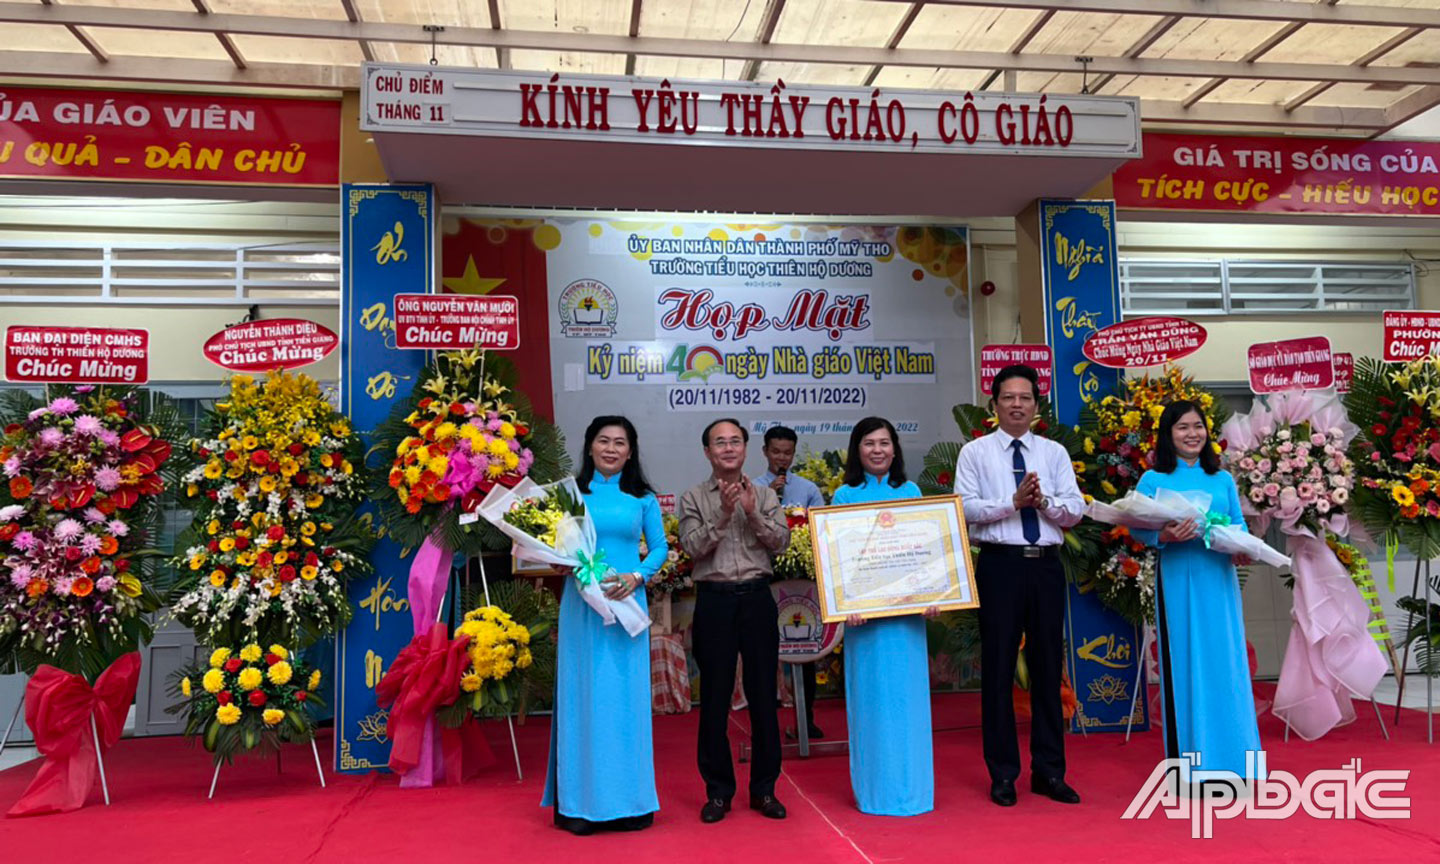 Trường Tiểu học Thiên Hộ Dương vinh dự đón nhận Bằng công nhận danh hiệu “Tập thể lao động xuất sắc” của UBND tỉnh Tiền Giang trao tặng.